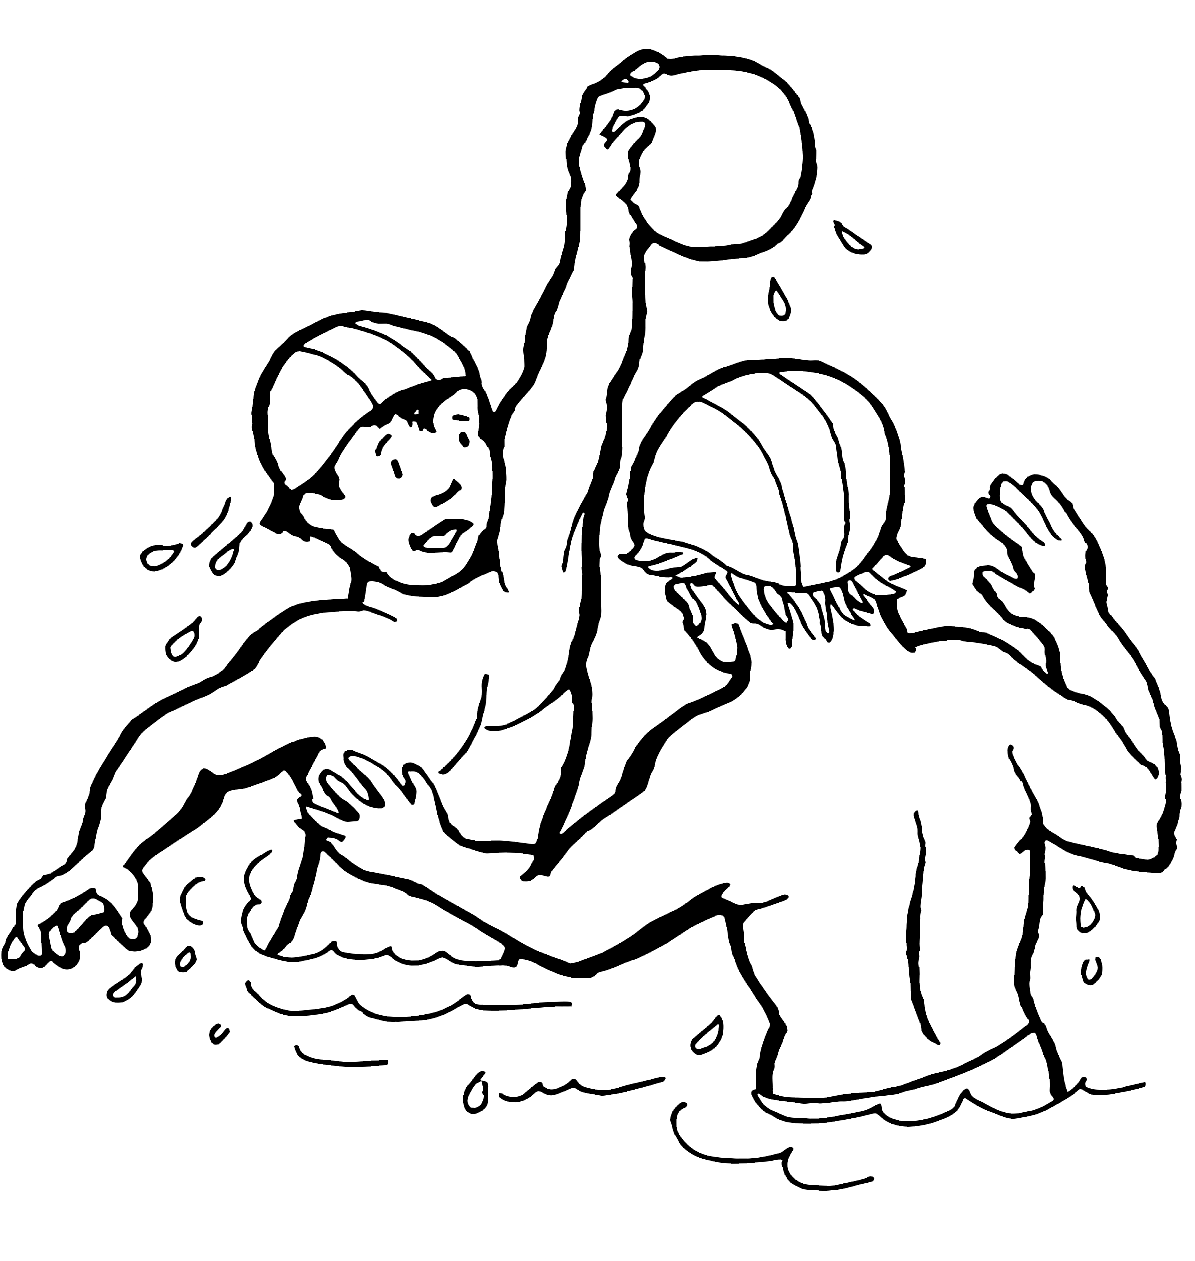 Crianças brincando de pólo aquático em esportes aquáticos